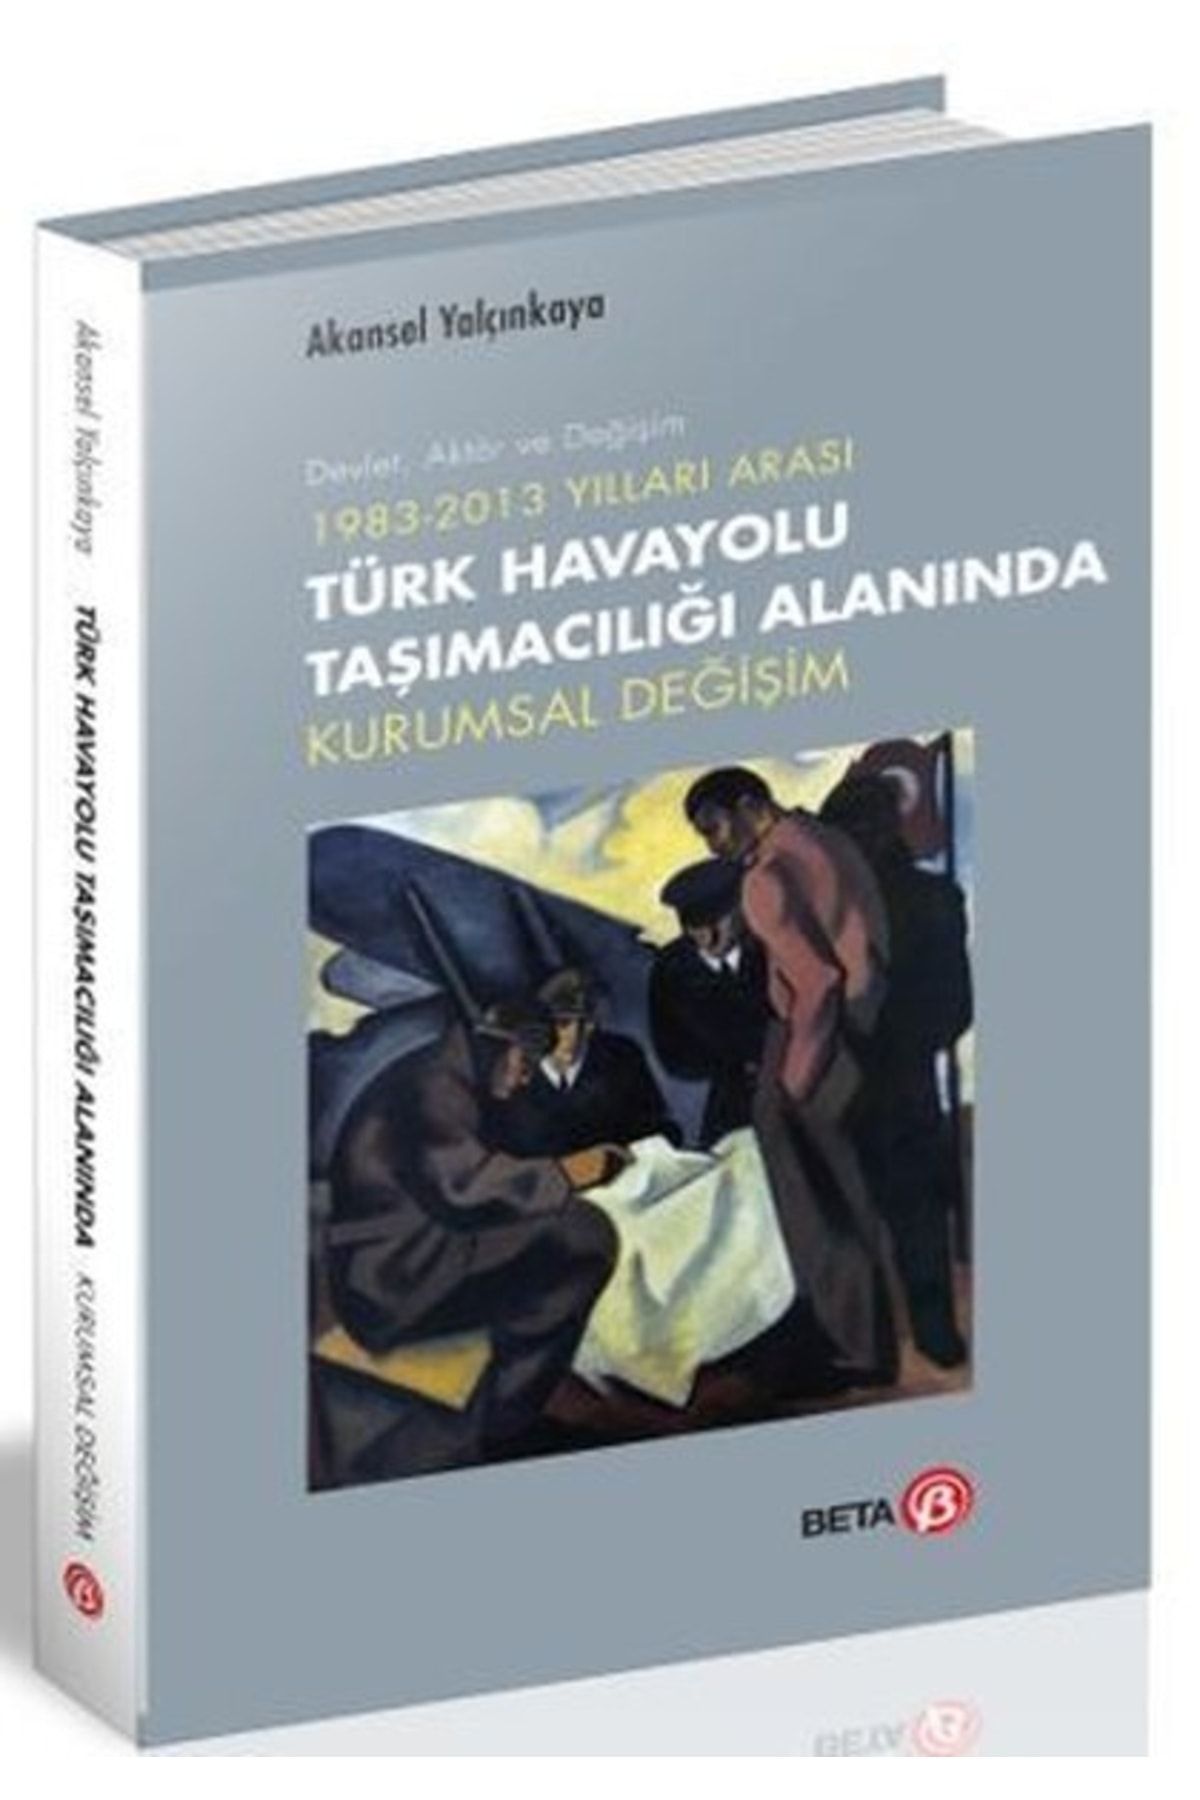 Beta Yayınları Türk Havayolu Taşımacılığı Alanında Kurumsal Değişim